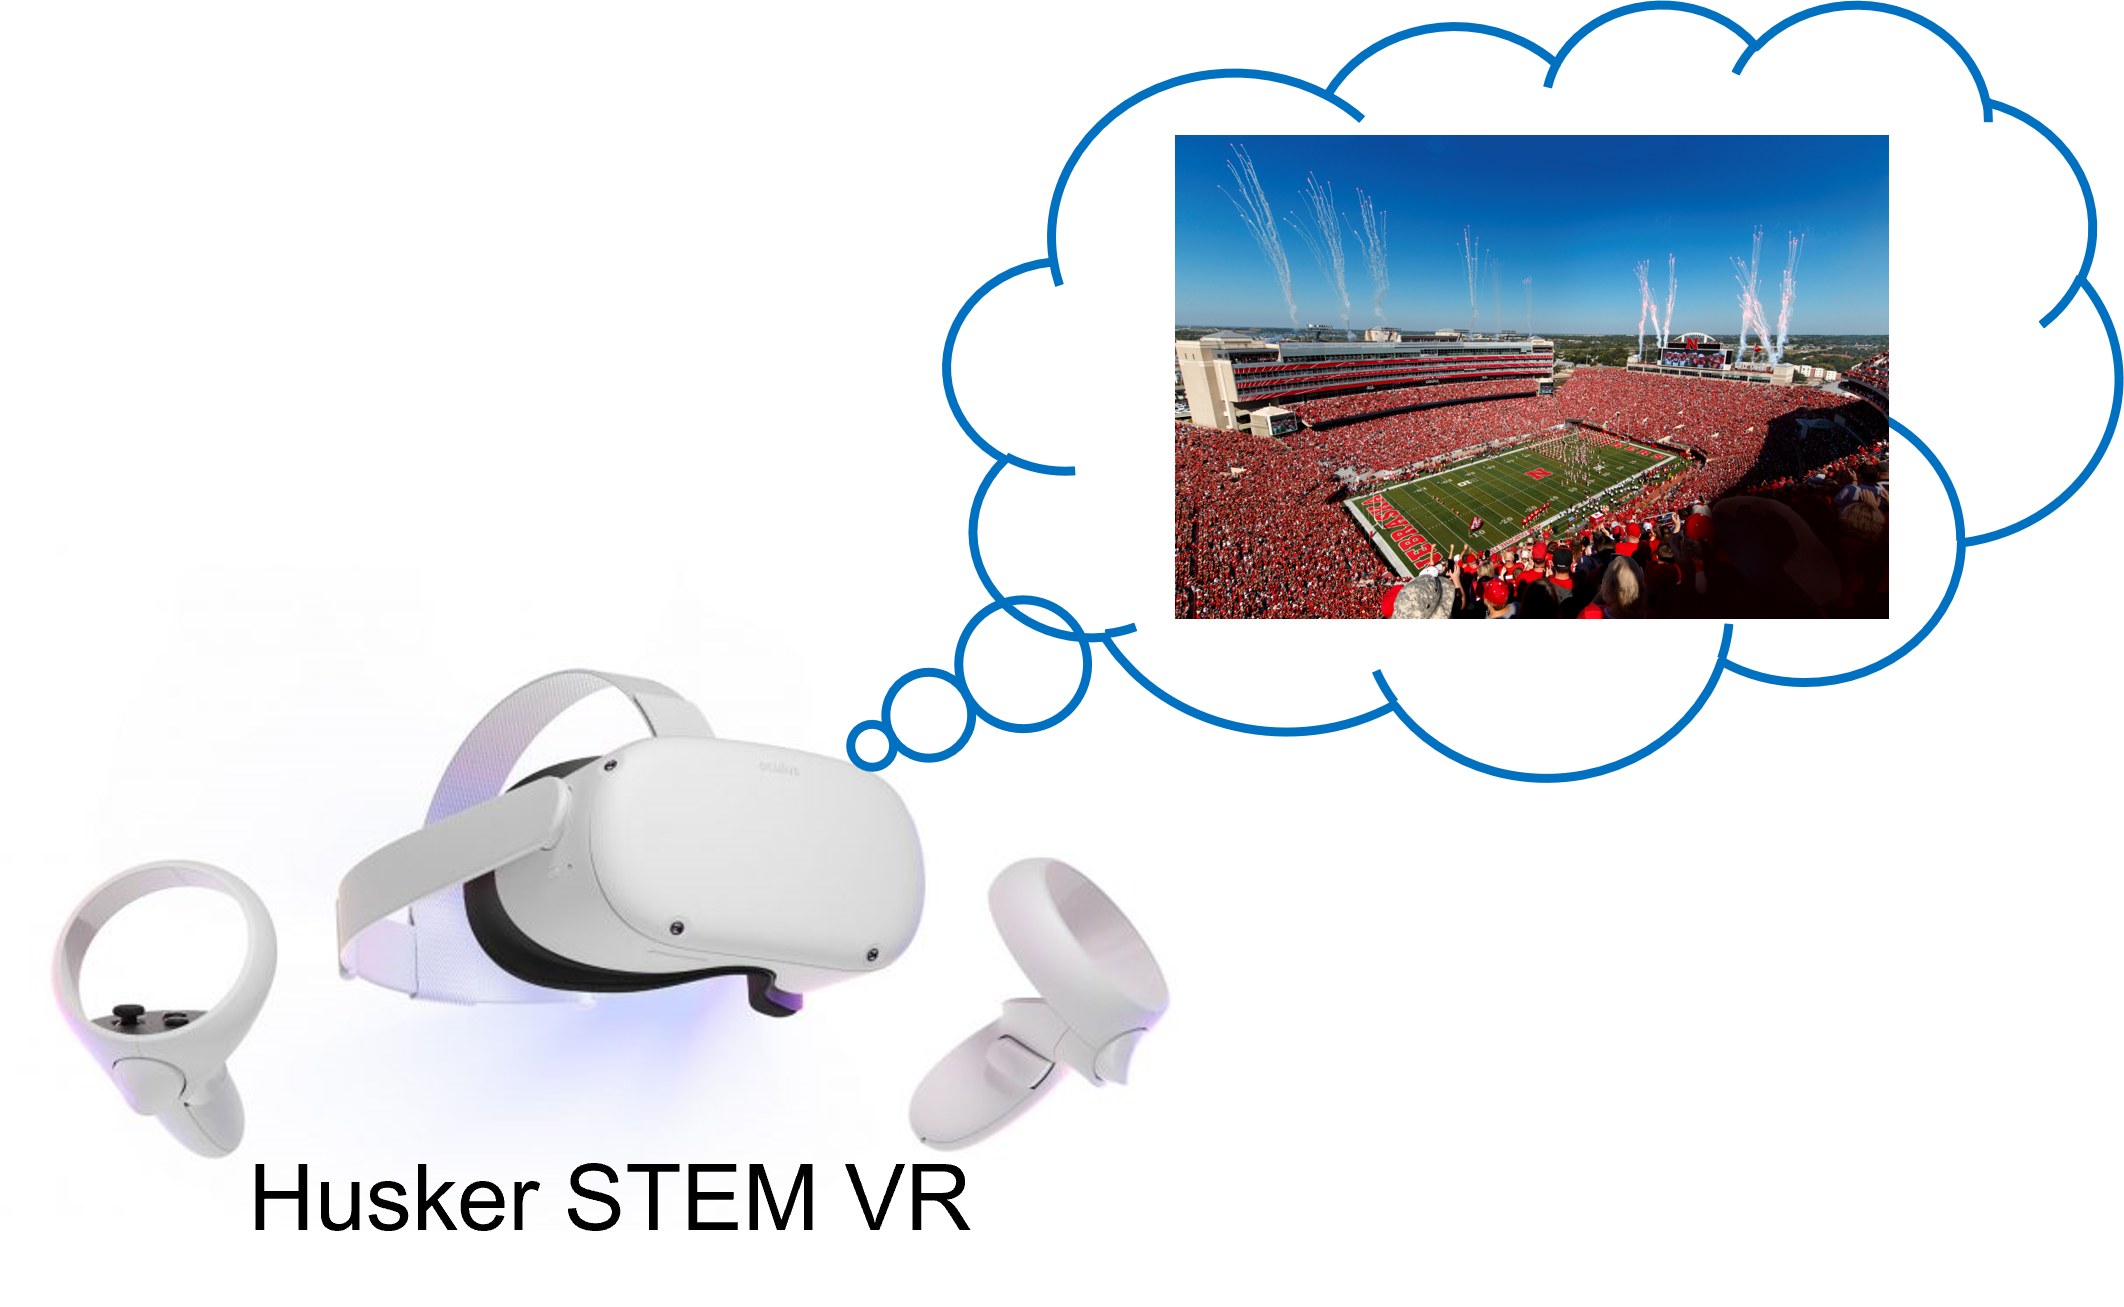 Husker STEM VR Application